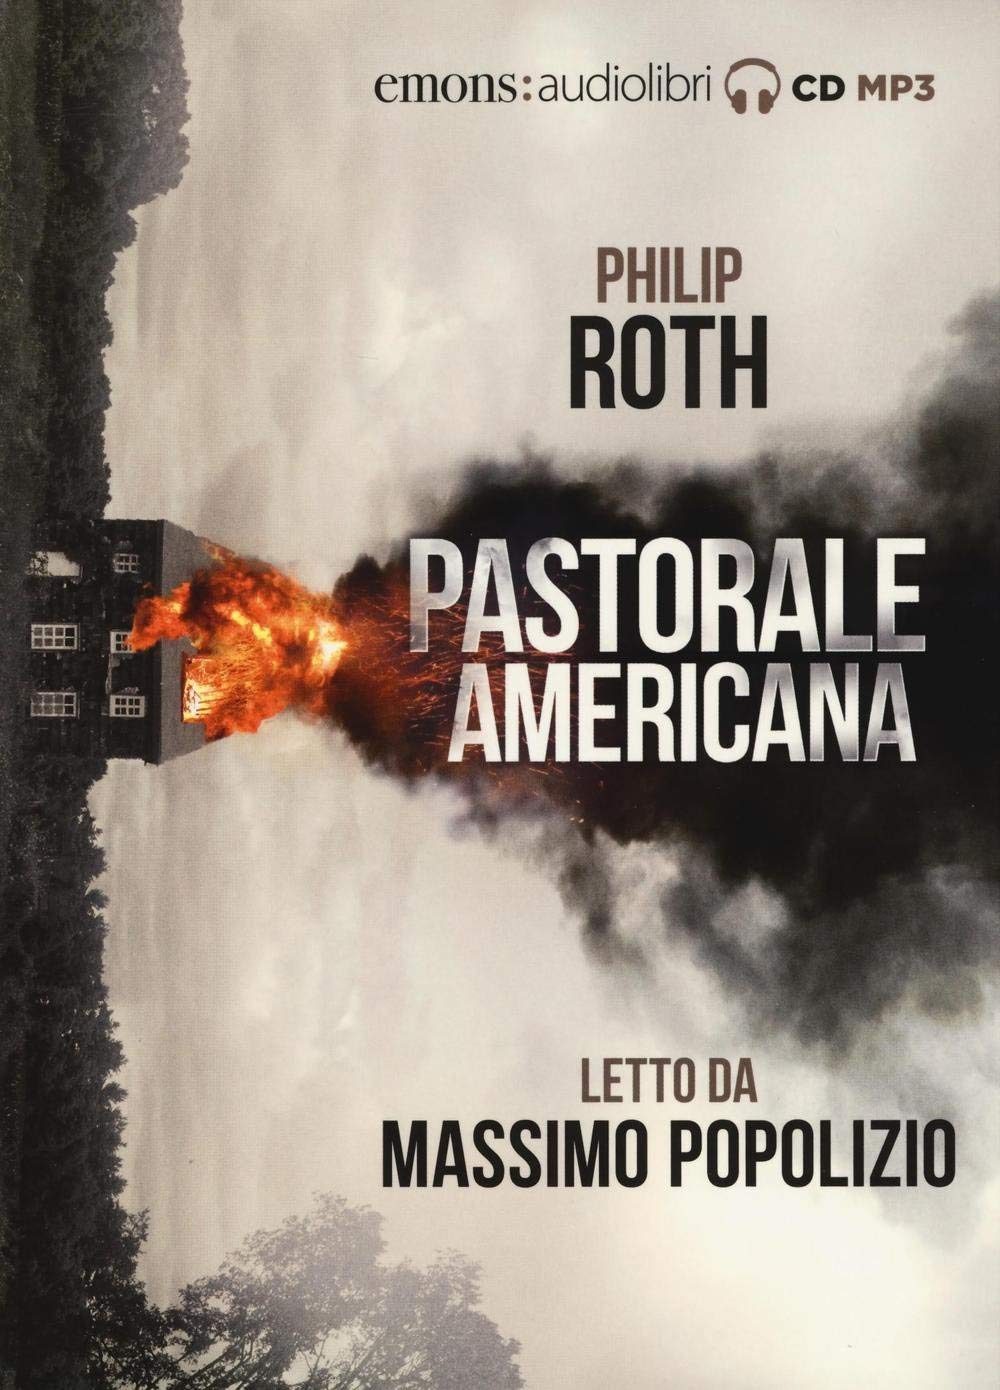 Audiolibro Philip Roth - Roth, Philip (Audiolibro) NUOVO SIGILLATO, EDIZIONE DEL 27/10/2016 SUBITO DISPONIBILE